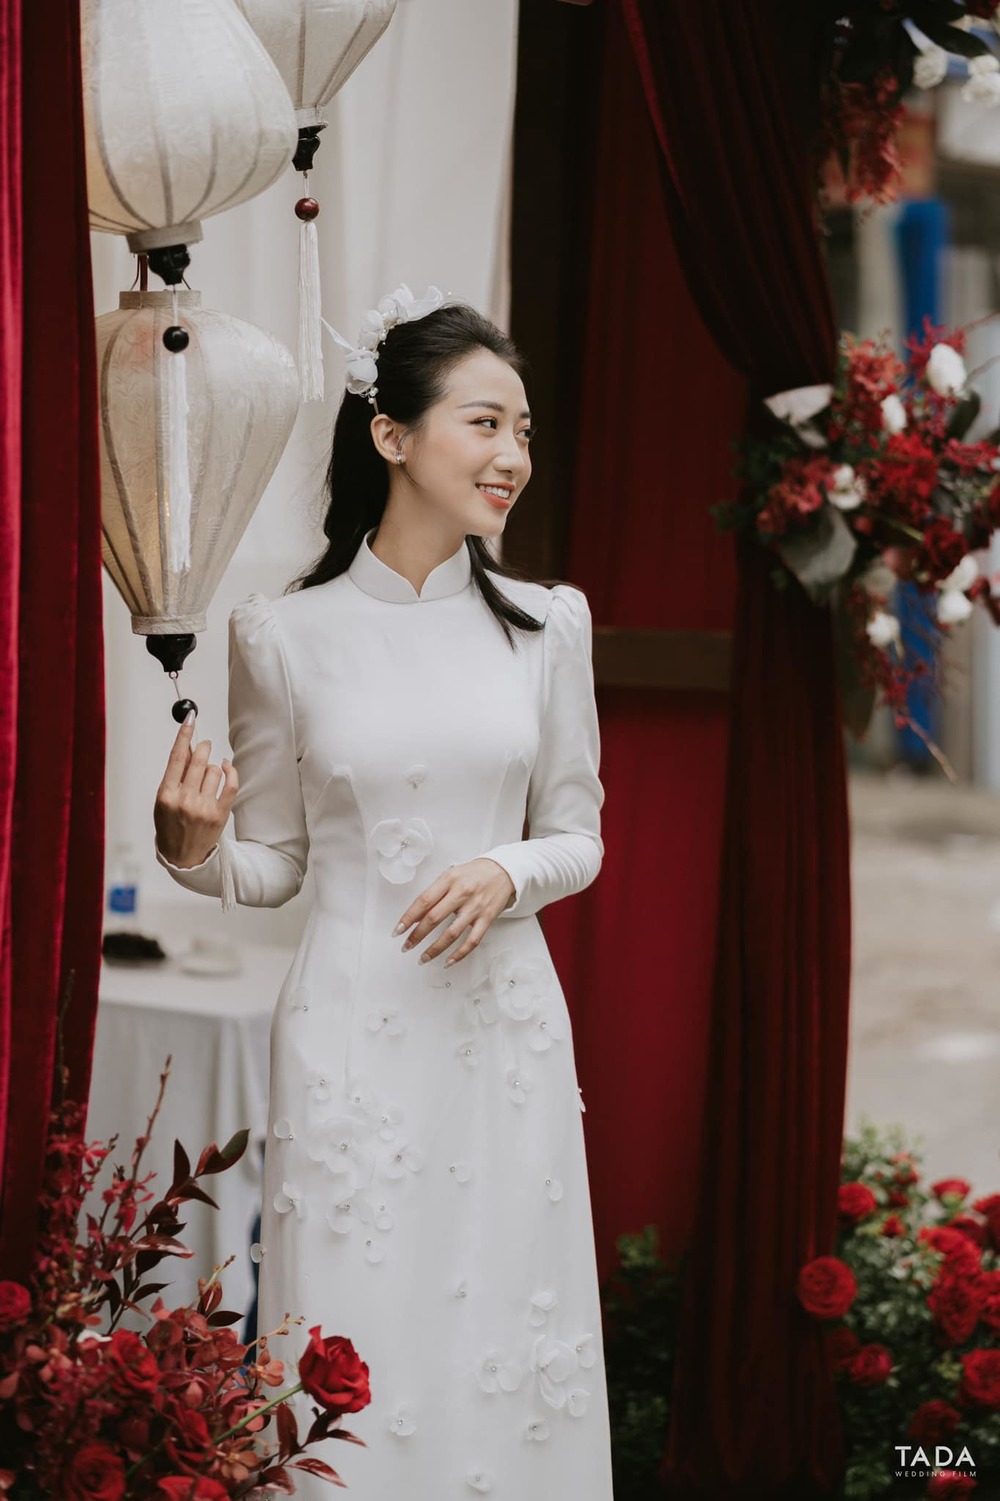  
Chiếc áo dài trắng của Kiều Ly được đính kết hoa nổi để tạo điểm nhấn thu hút. (Ảnh: FB Kieu Ly Pham)